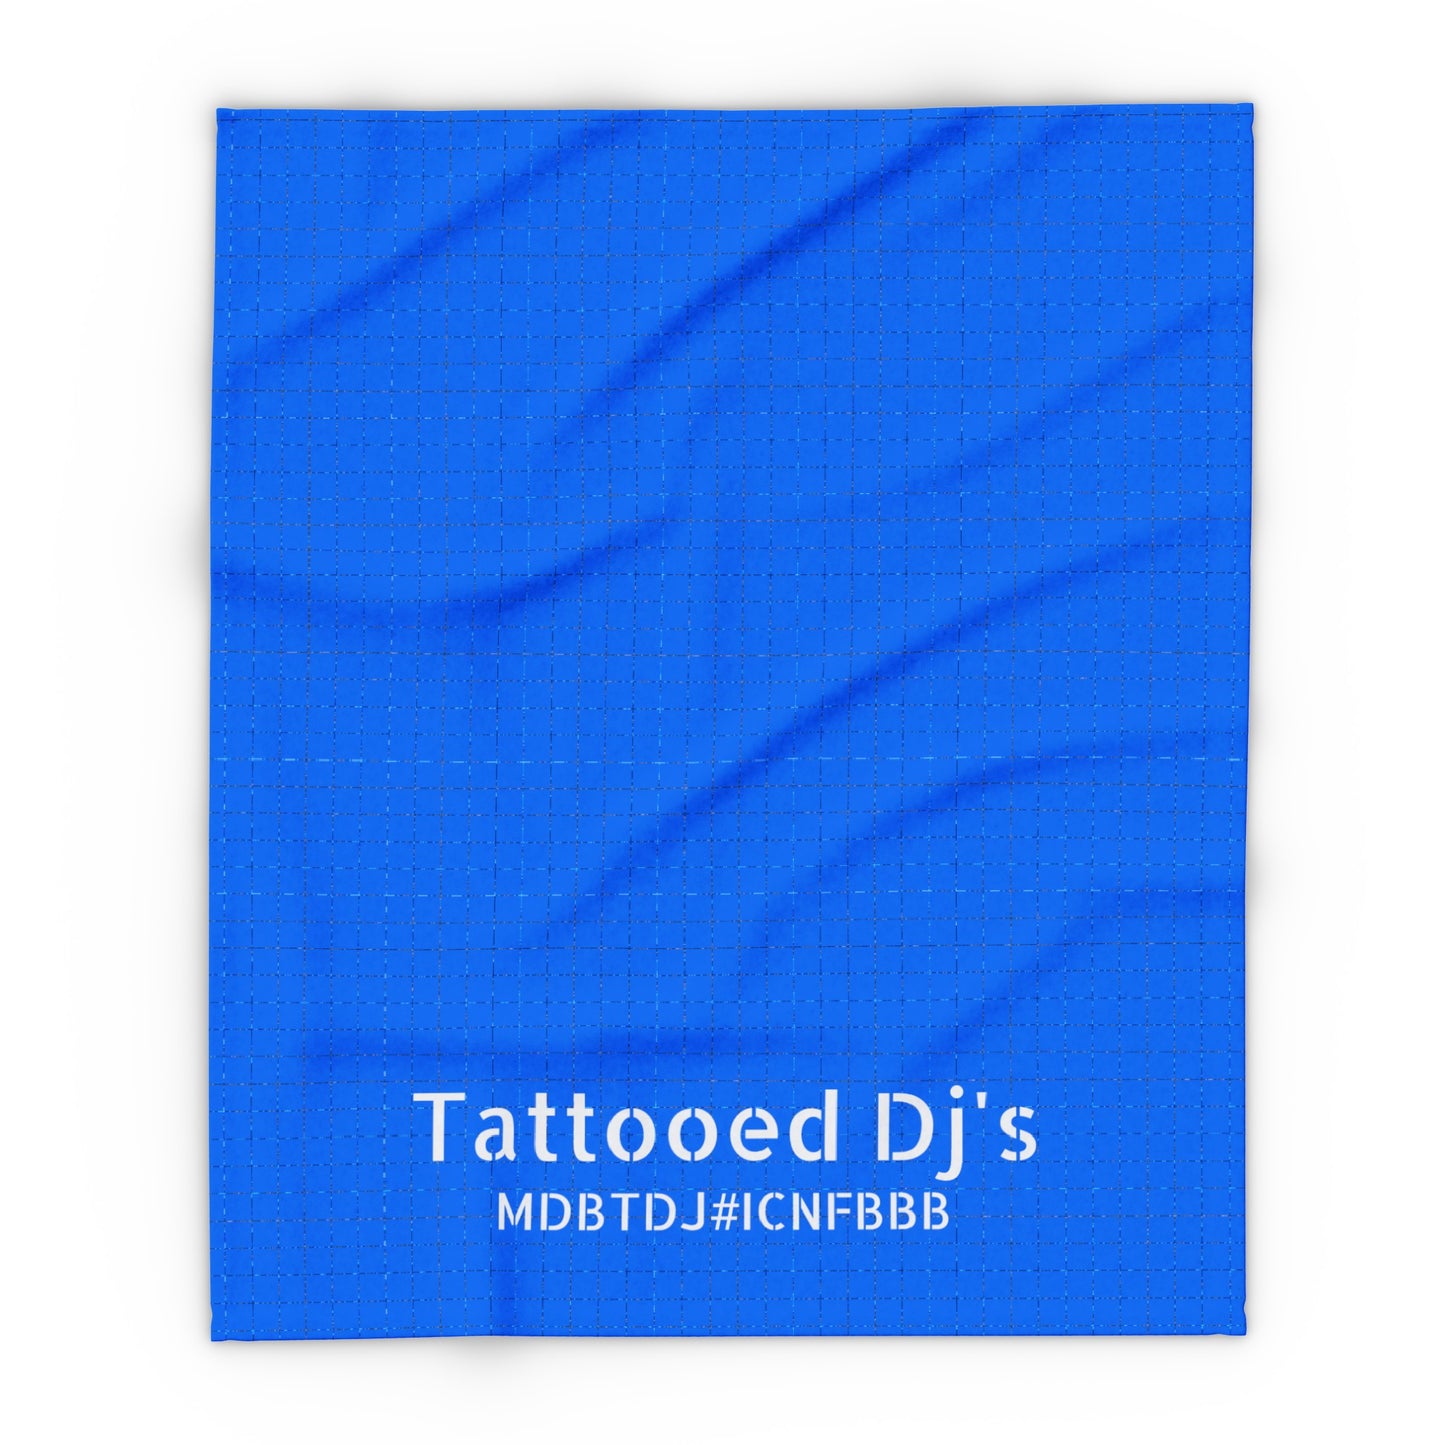 MDBTDJ#ICNFBBB Fleece Blanket Tattooed Dj's Limited Edition, Home Decor, Tattooed Djs Shop